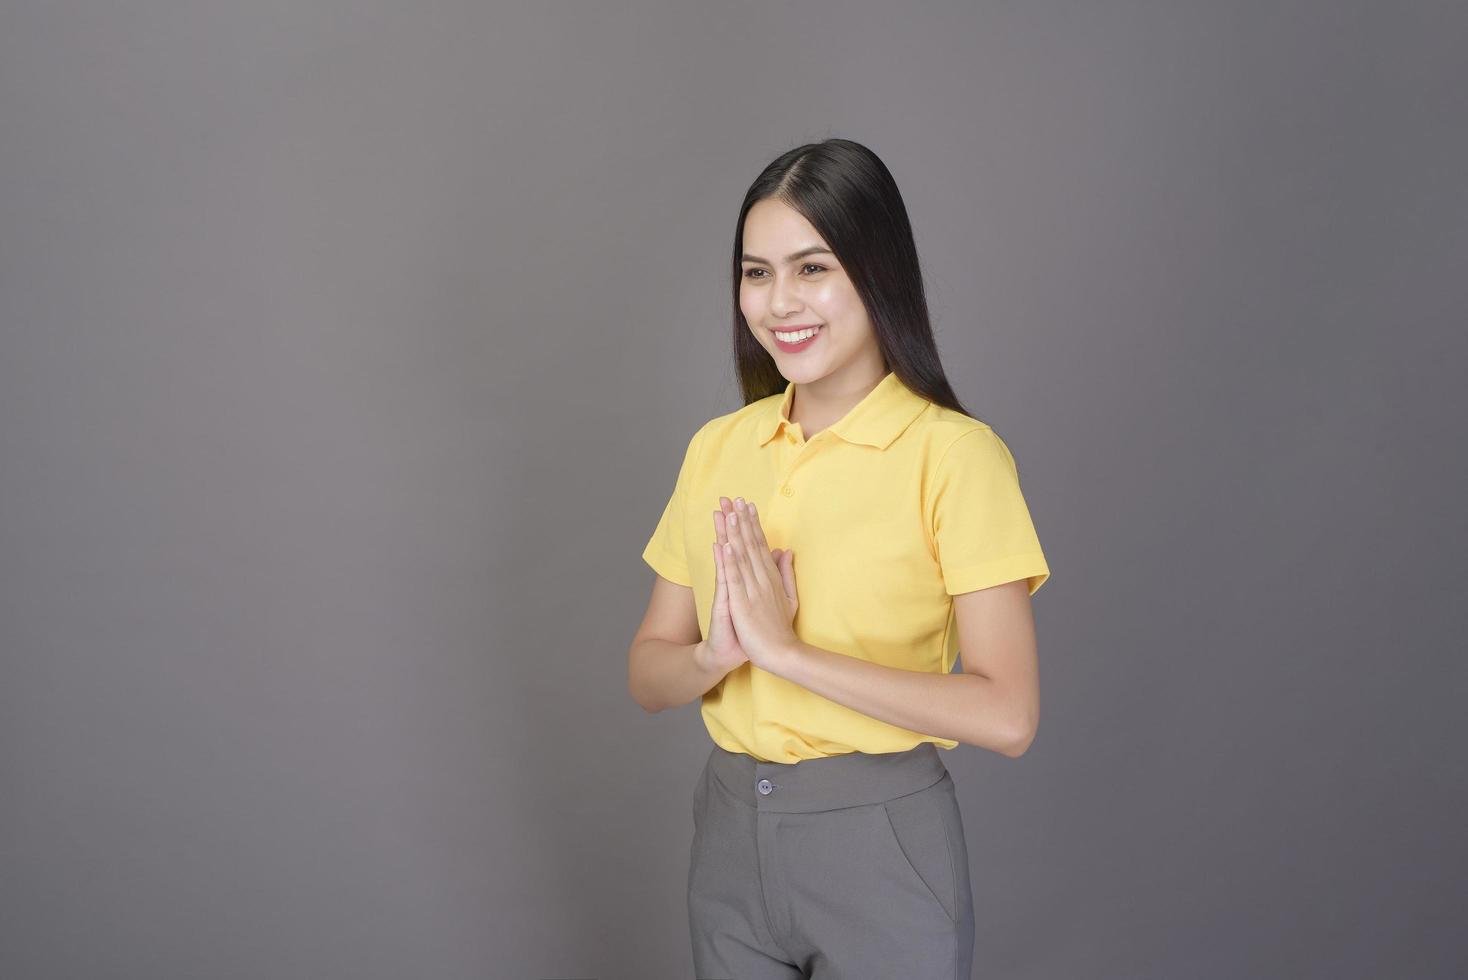 linda mulher confiante está cumprimentando tailandês wai para mostrar respeito pelo estúdio de fundo cinza foto